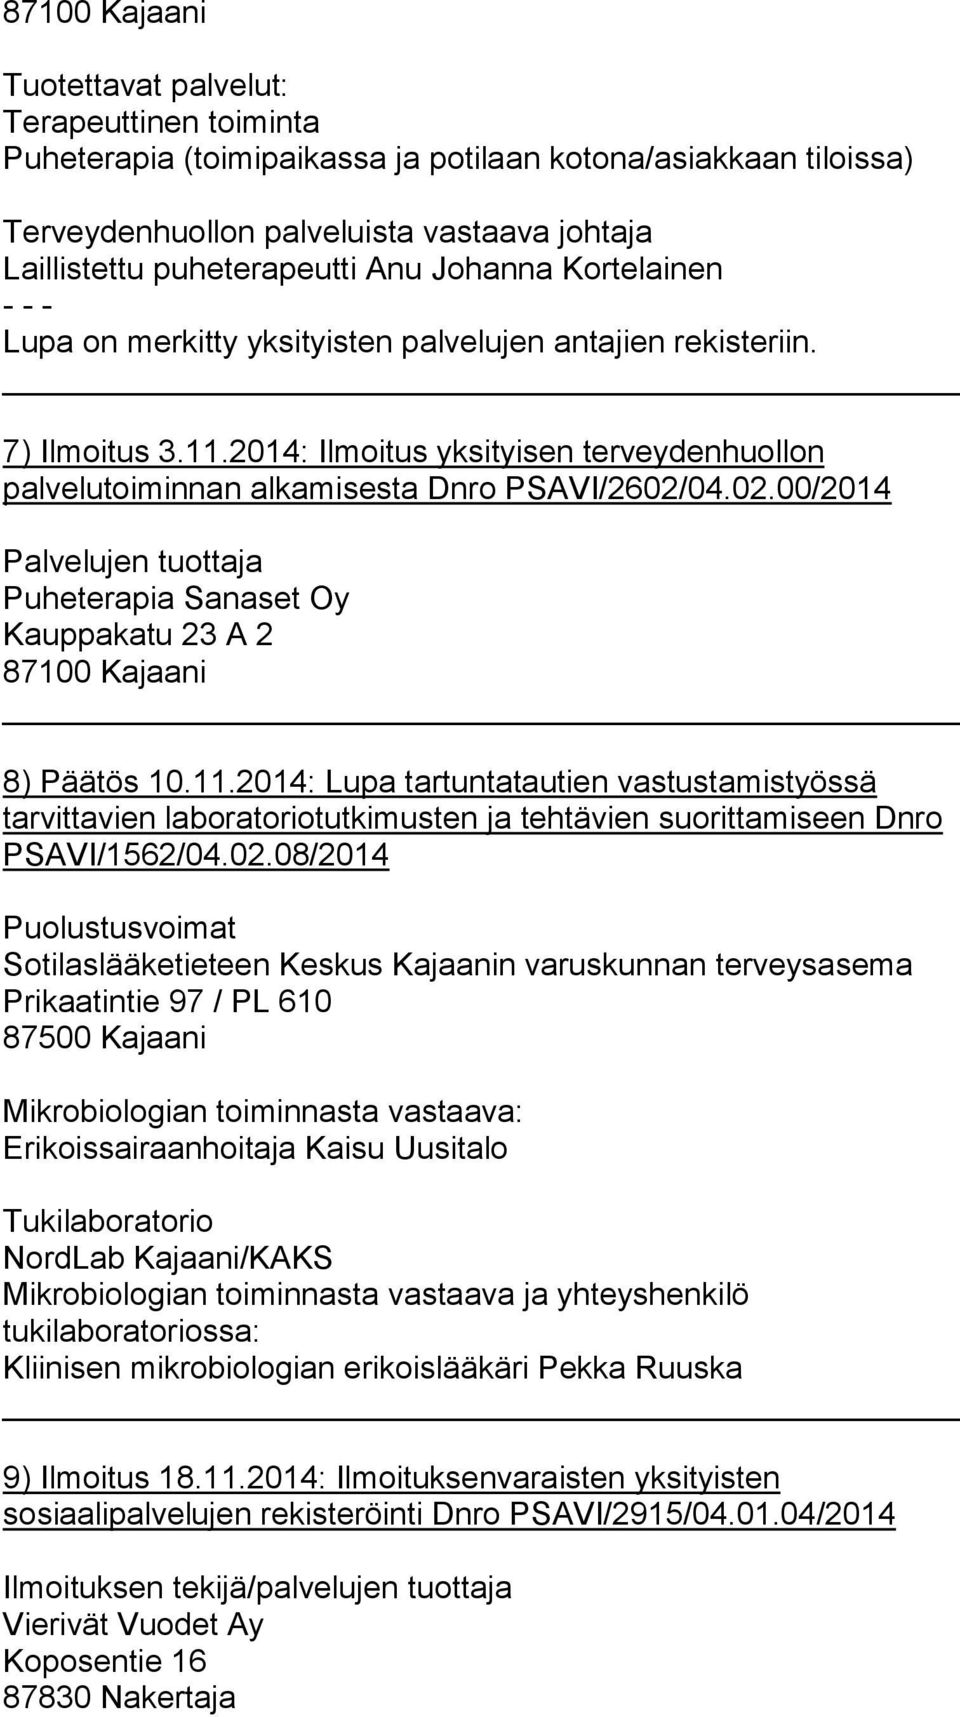 04.02.00/2014 Palvelujen tuottaja Puheterapia Sanaset Oy Kauppakatu 23 A 2 8) Päätös 10.11.